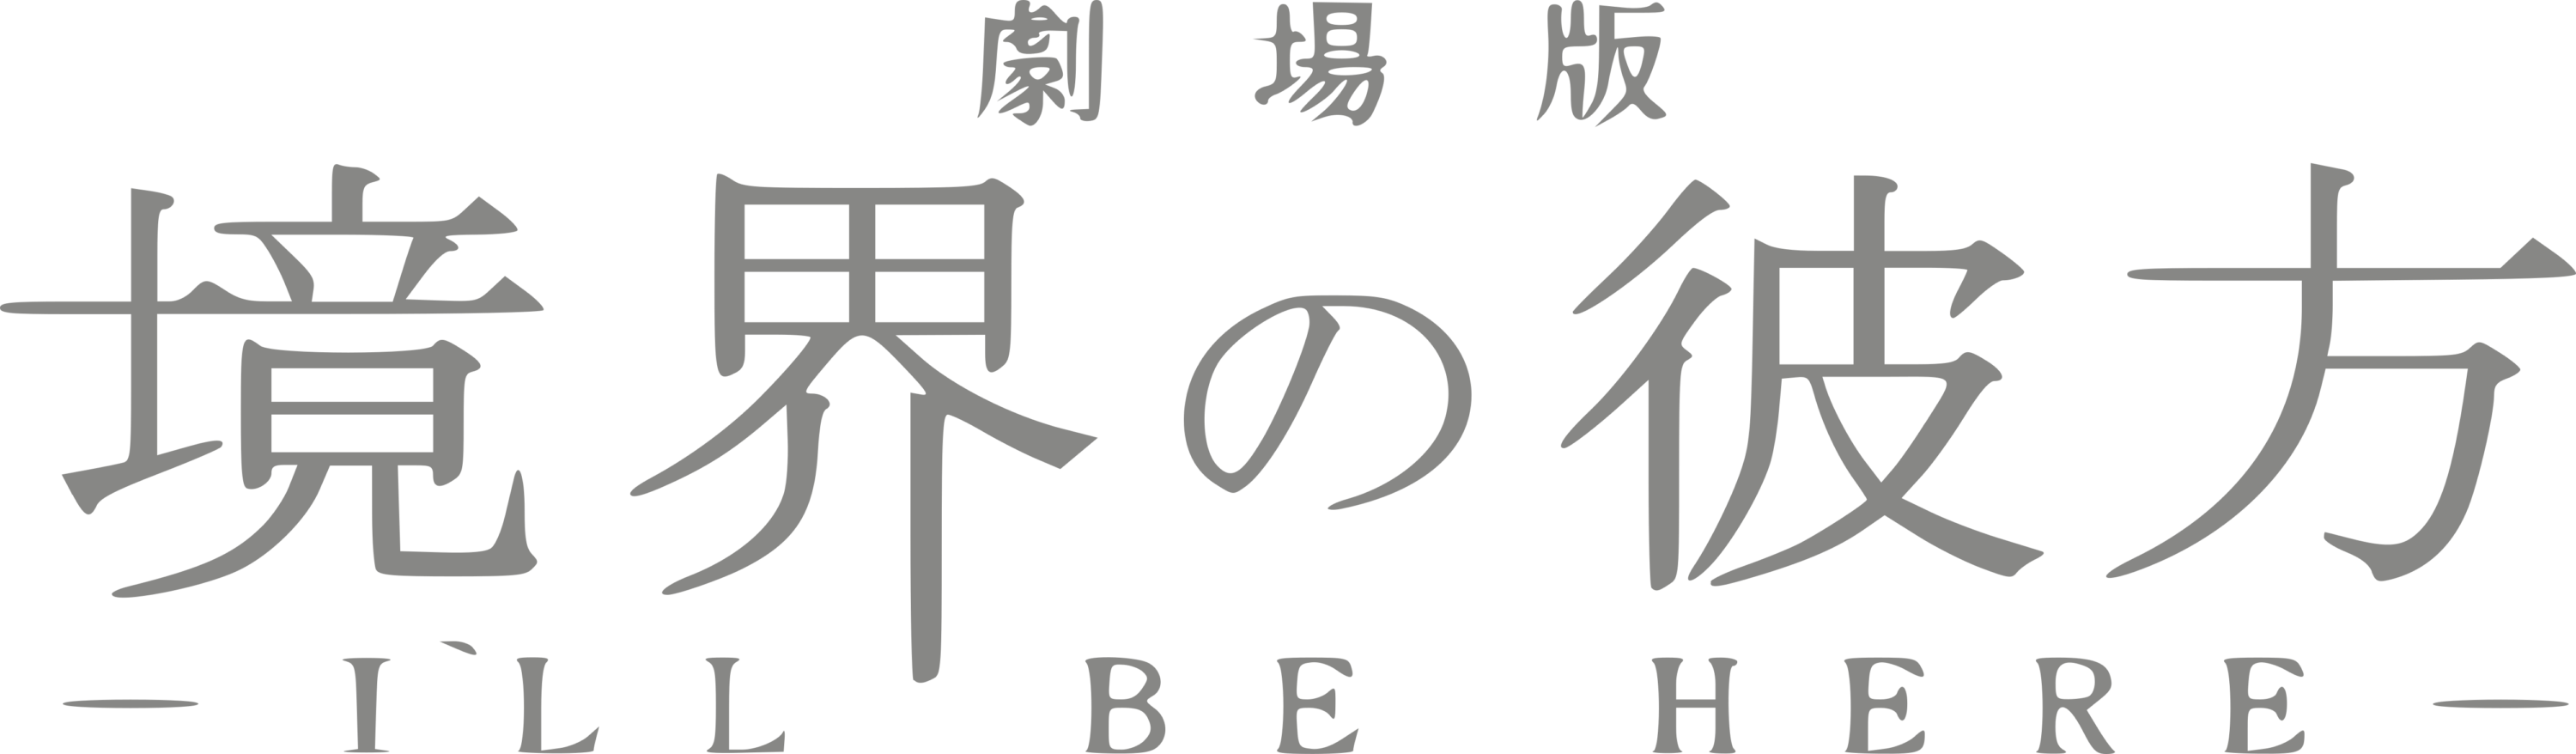 Kyoukai no Kanata Ill Be Here Logo